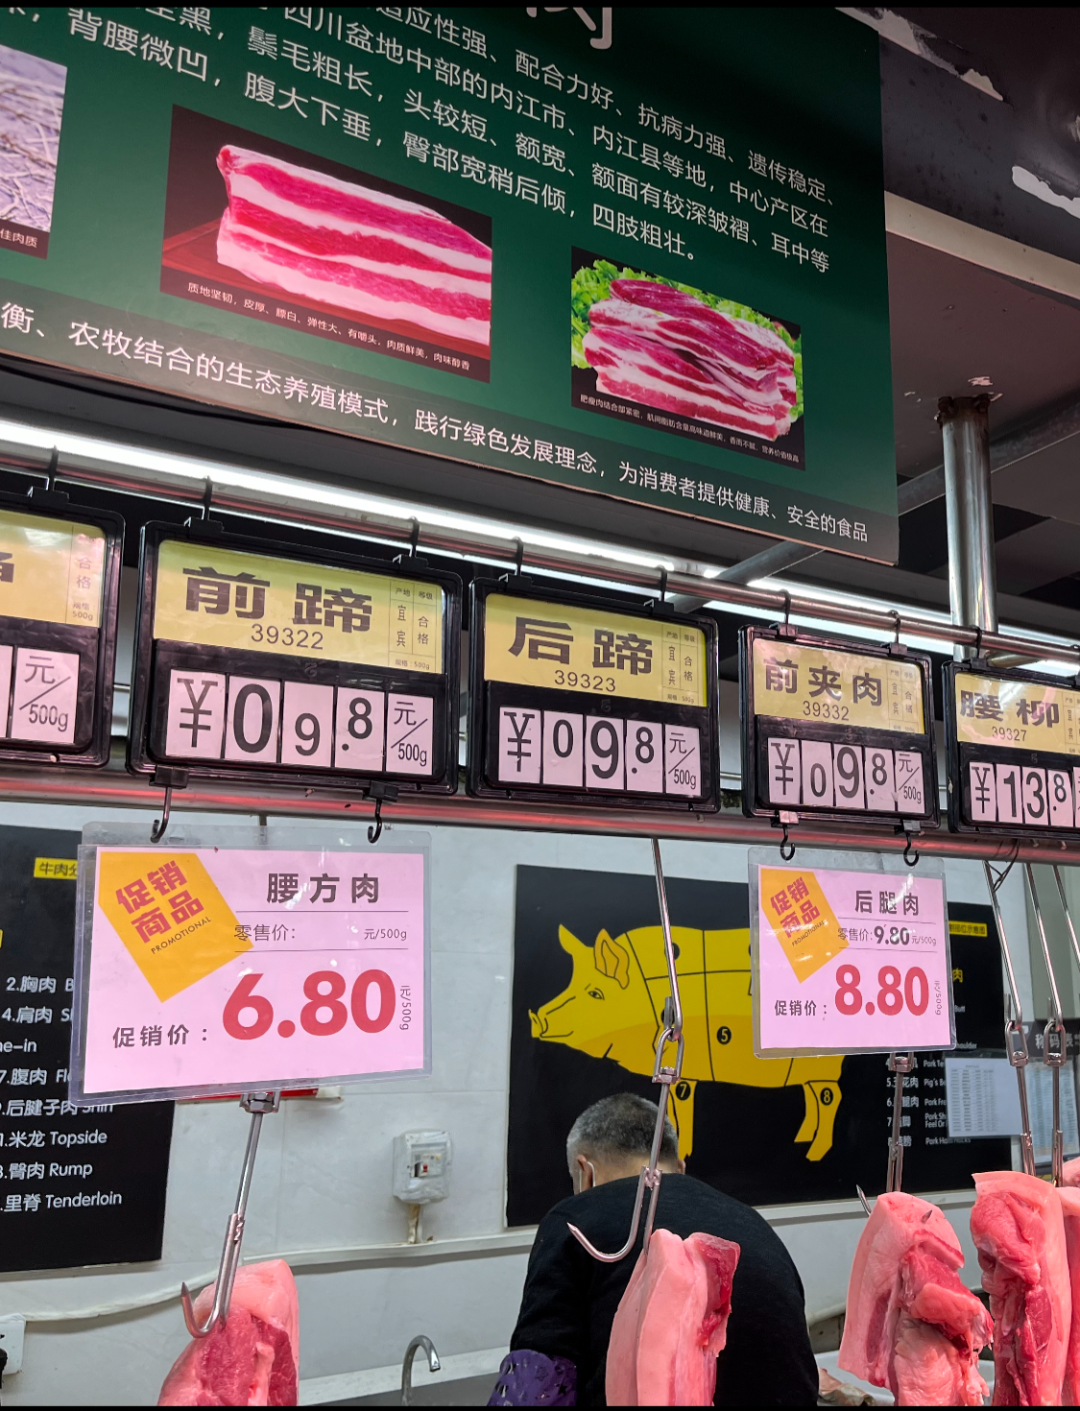 @内江人 现在小米辣竟然要50元/斤，猪肉却跌破个位数！你还买吗？